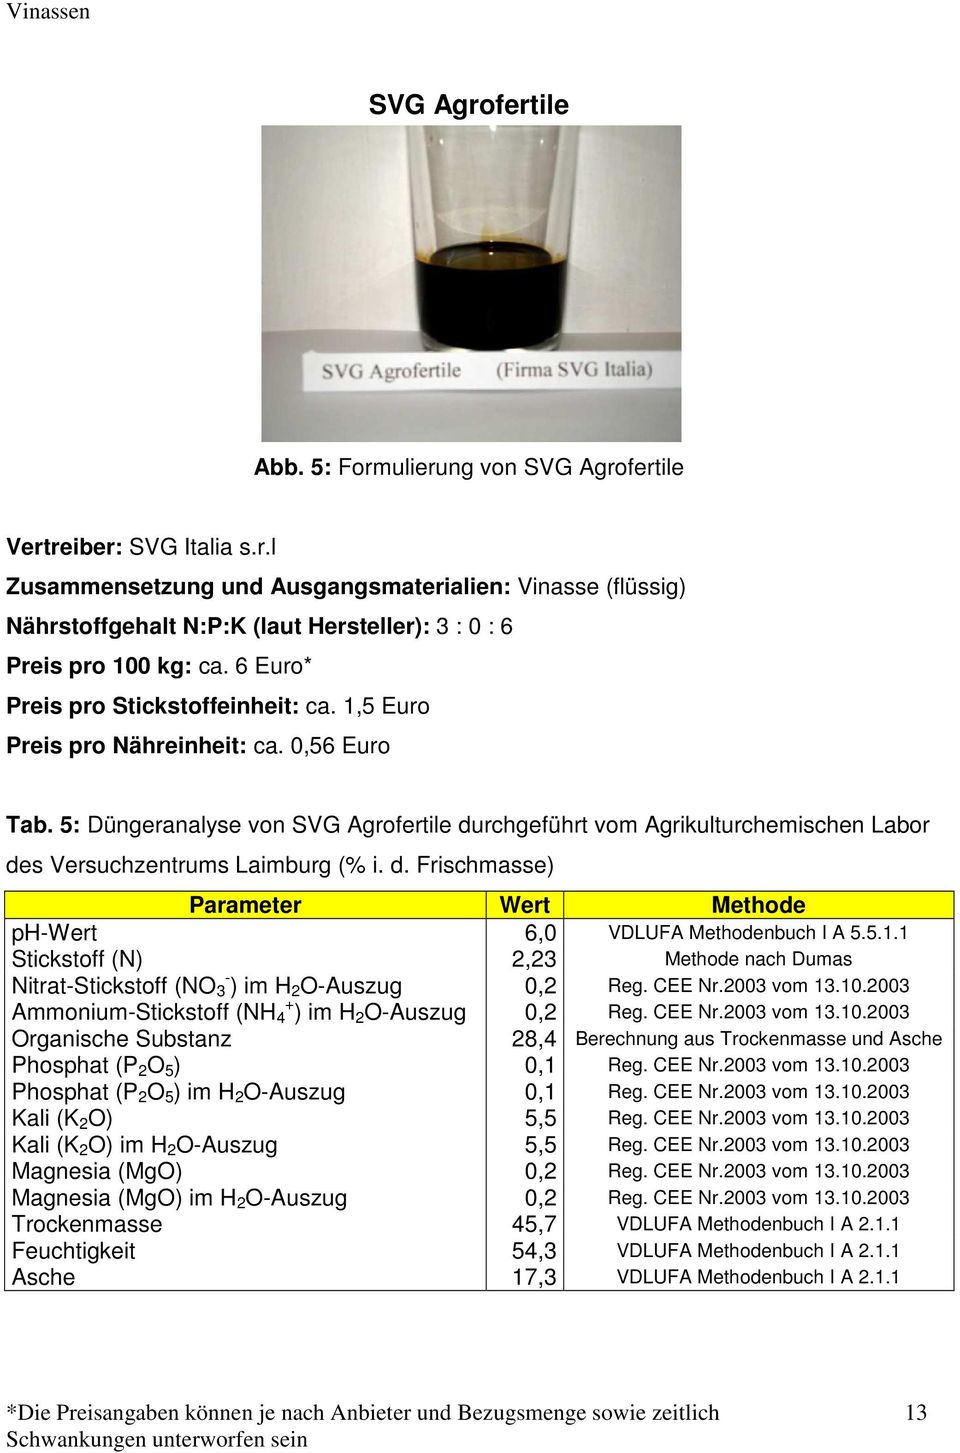 5: Düngeranalyse von SVG Agrofertile durchgeführt vom Agrikulturchemischen Labor des Versuchzentrums Laimburg (% i. d. Frischmasse) Parameter Wert Methode ph-wert 6,0 VDLUFA Methodenbuch I A 5.5.1.